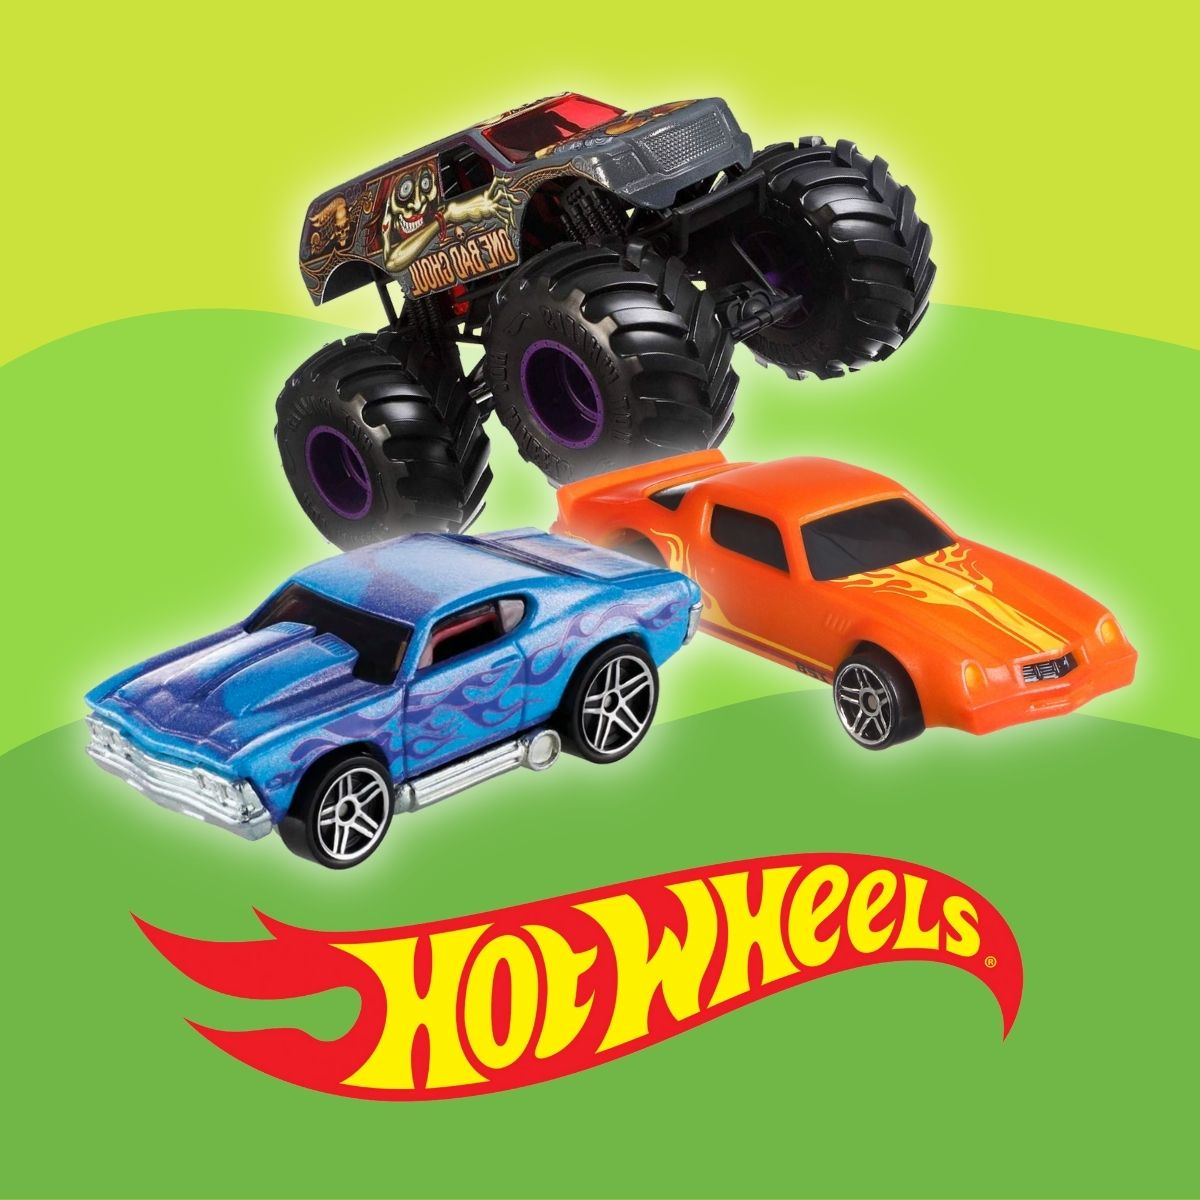 Cotxes Hot Wheels